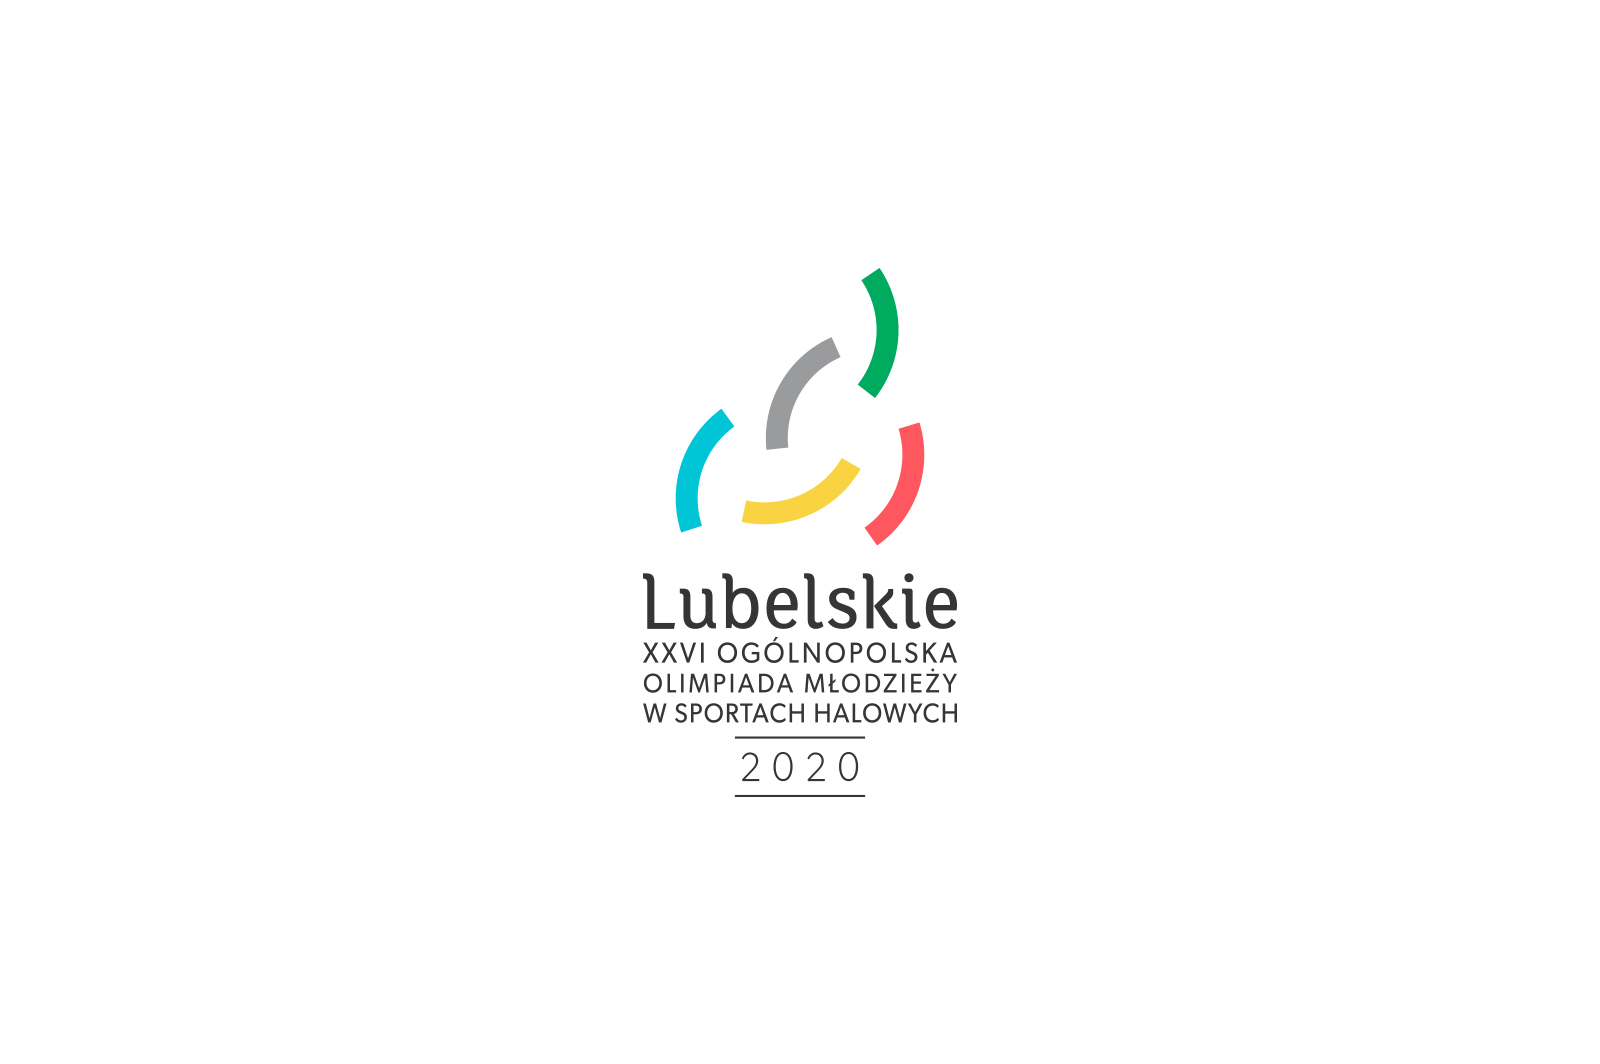 XXVI Ogólnopolska Olimpiada Młodzieży w sportach halowych „Lubelskie 2020” – ważna informacja